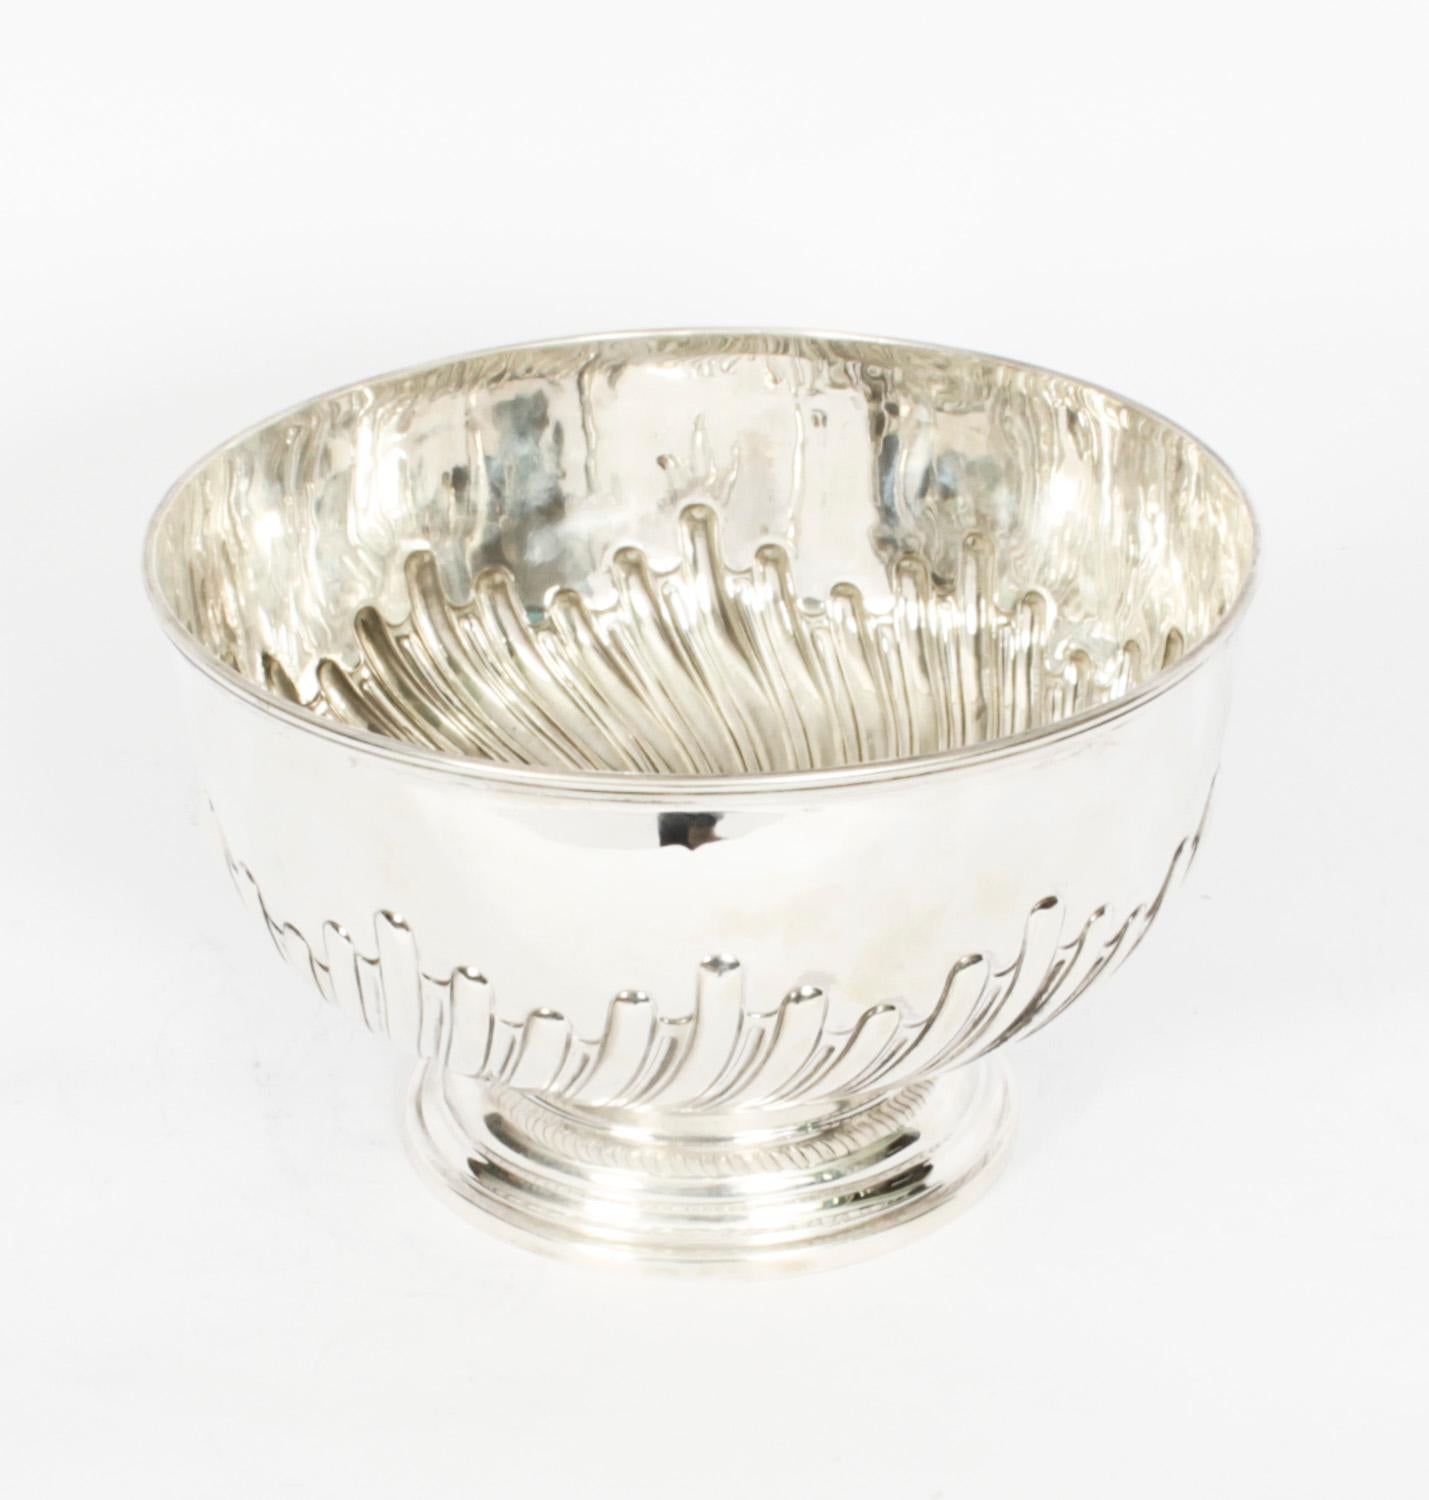 Dies ist eine große prächtige antiken viktorianischen Sterling Silber Bowle mit dem Hersteller Marke der renommierten Silberschmiede Walker & Hall und Punzierungen für Sheffield 1893.
 
Diese exquisite Bowlenschüssel eignet sich auch hervorragend